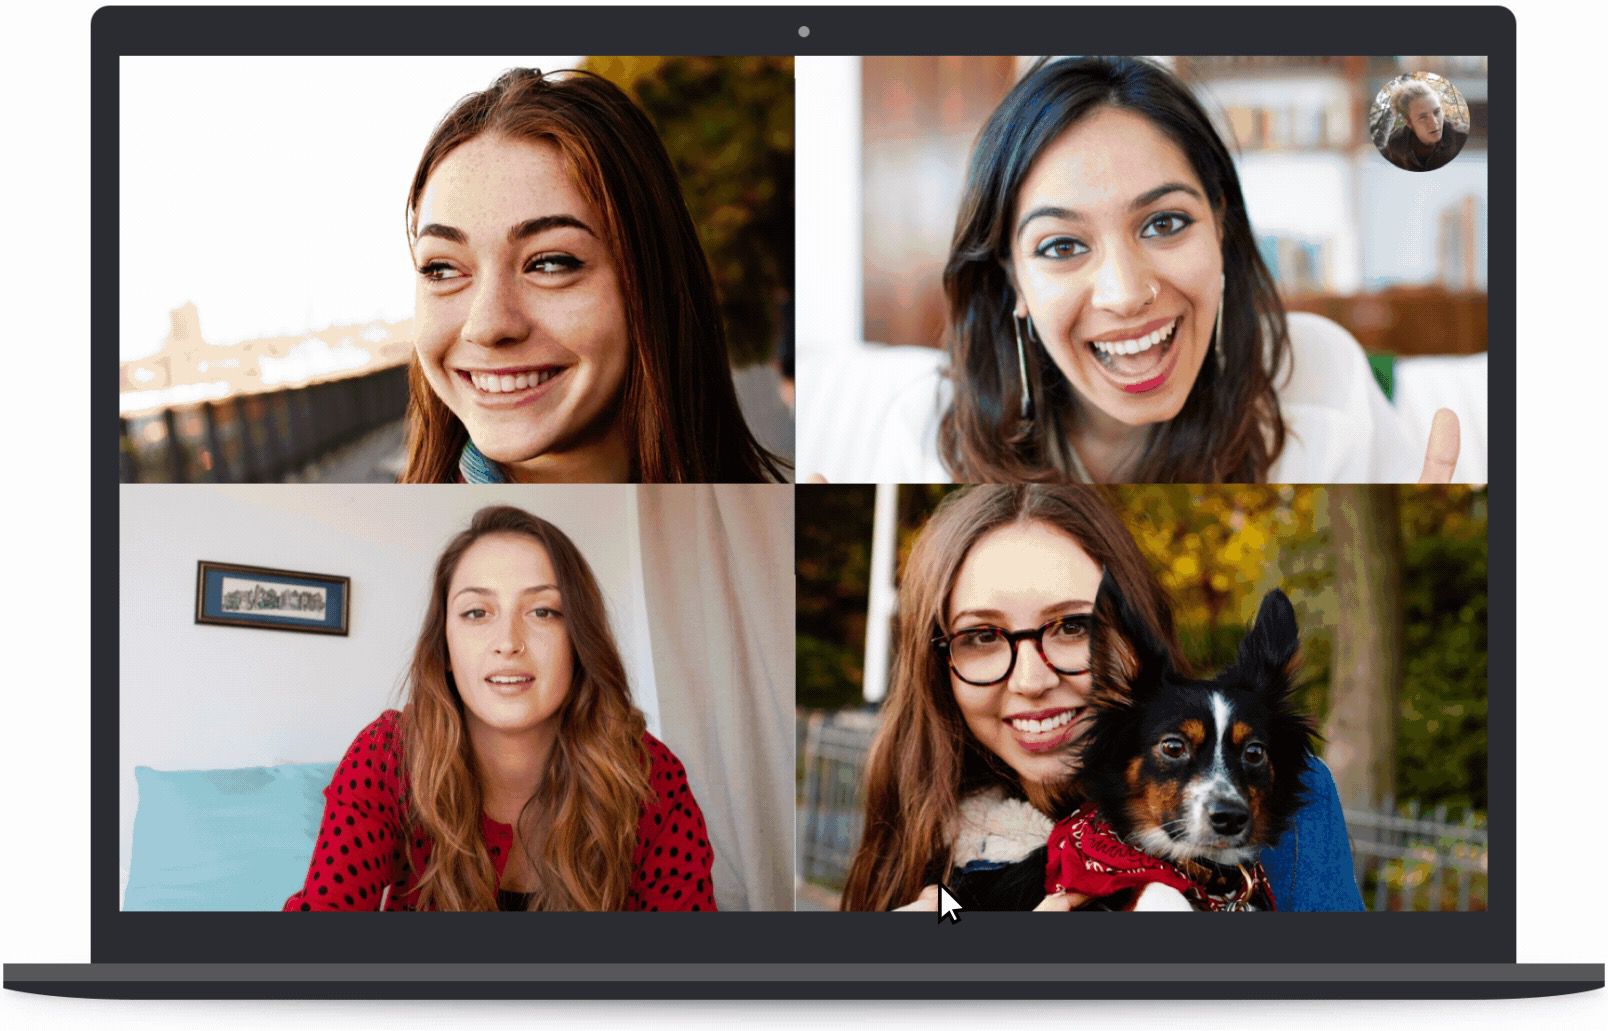 Blurring Feature: Hình ảnh liên quan đến Blurring Feature sẽ giới thiệu tới bạn tính năng che mờ hoàn hảo, giúp tăng tính chuyên nghiệp cho ảnh của bạn. Không đơn thuần chỉ là một tính năng hữu dụng, Blurring Feature còn là tiêu chí lựa chọn kỹ thuật số cho những người yêu thích nhiếp ảnh.